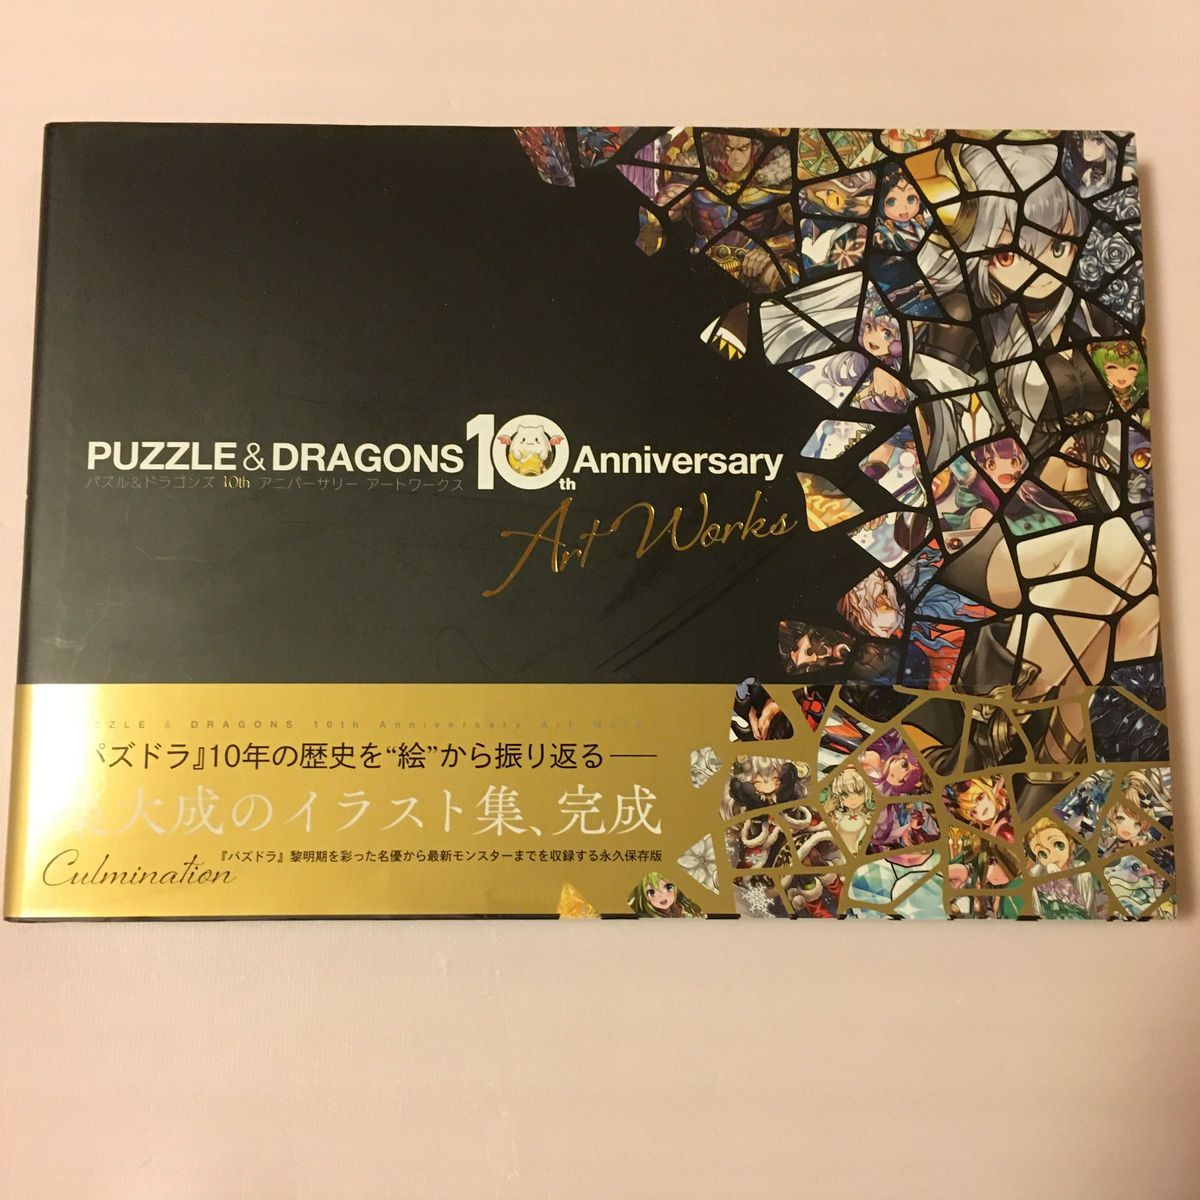 パズル&ドラゴンズ 10th Anniversary Art Works